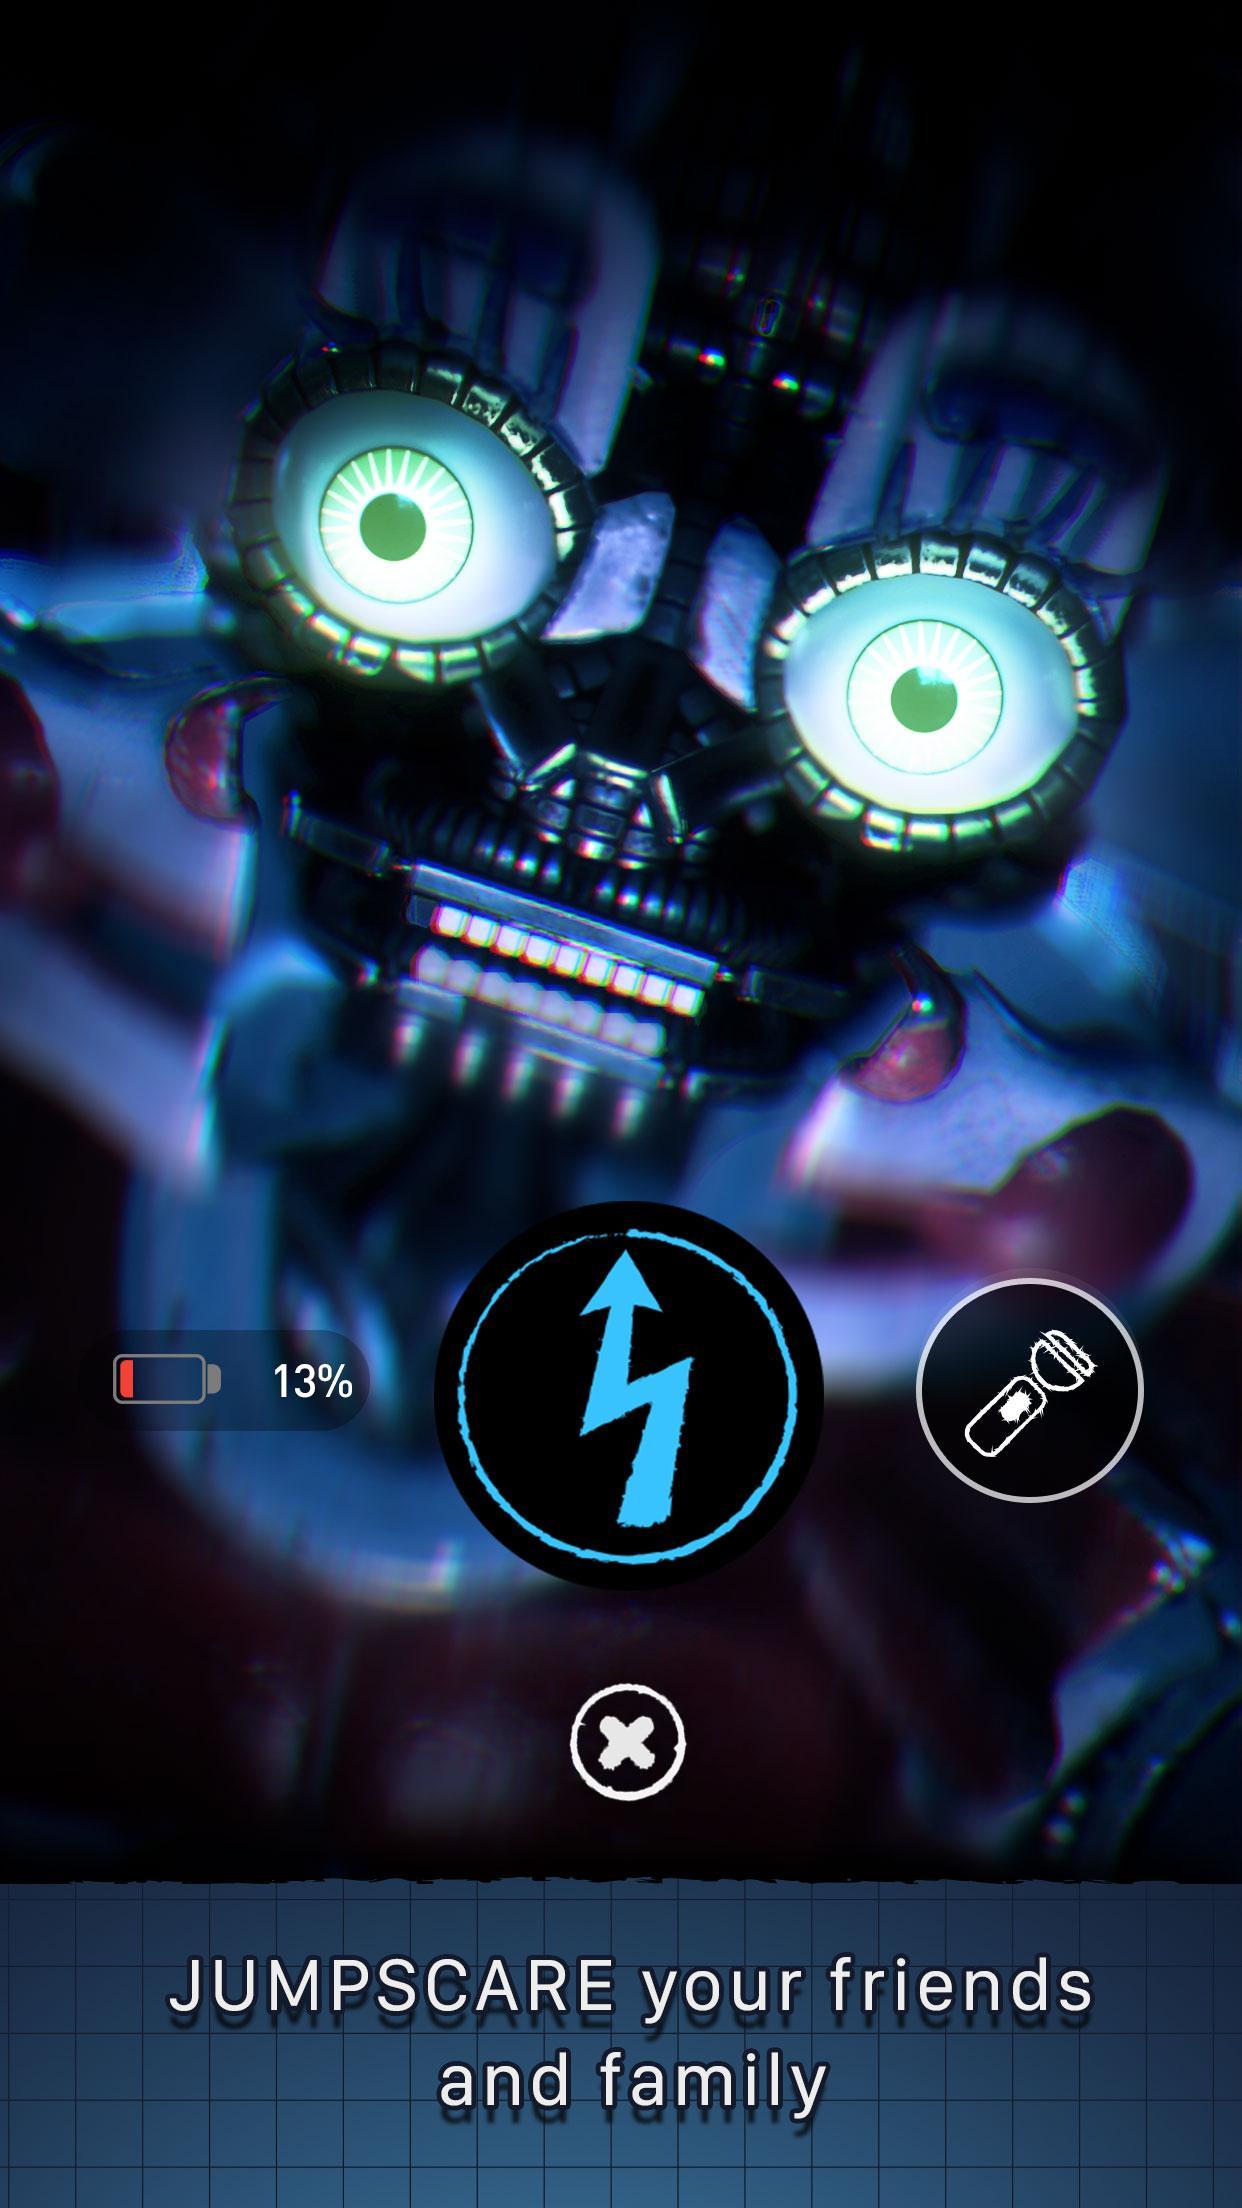 Baixar Five Nights at Freddy's AR APK para Android